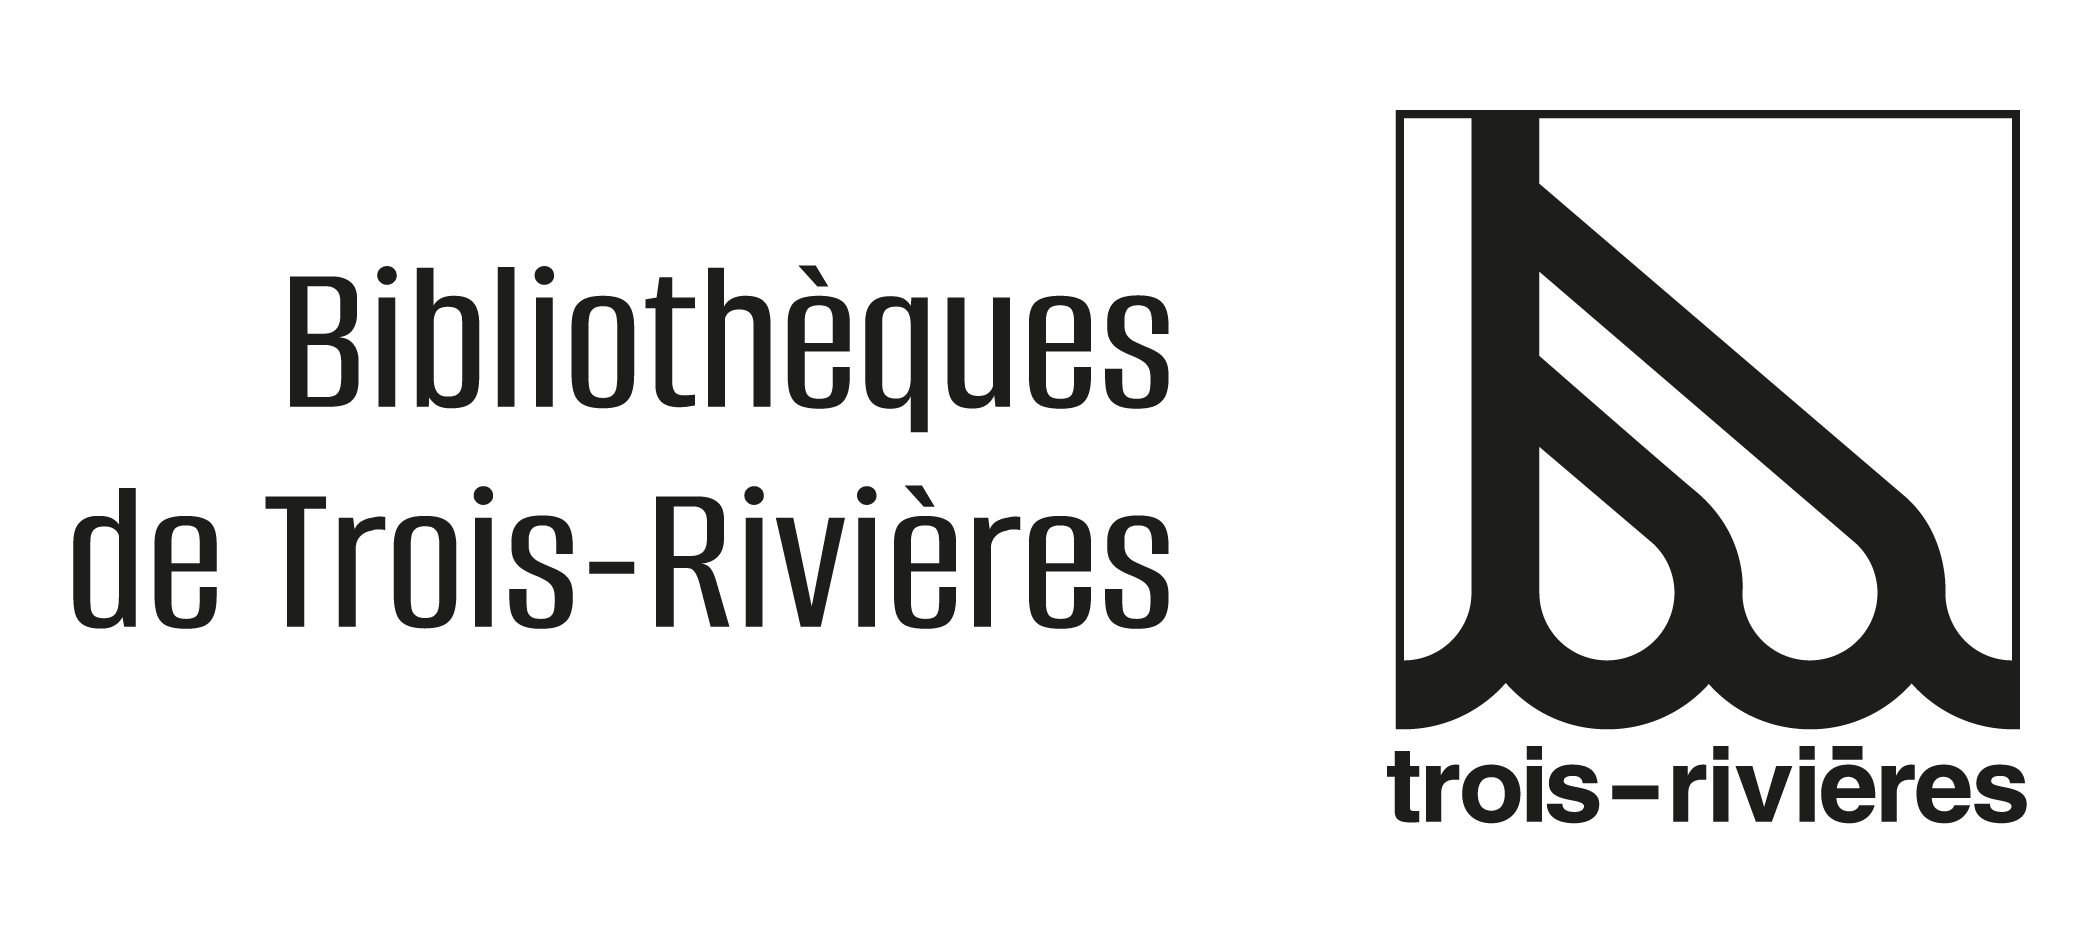 Bibliothèques de Trois-Rivières